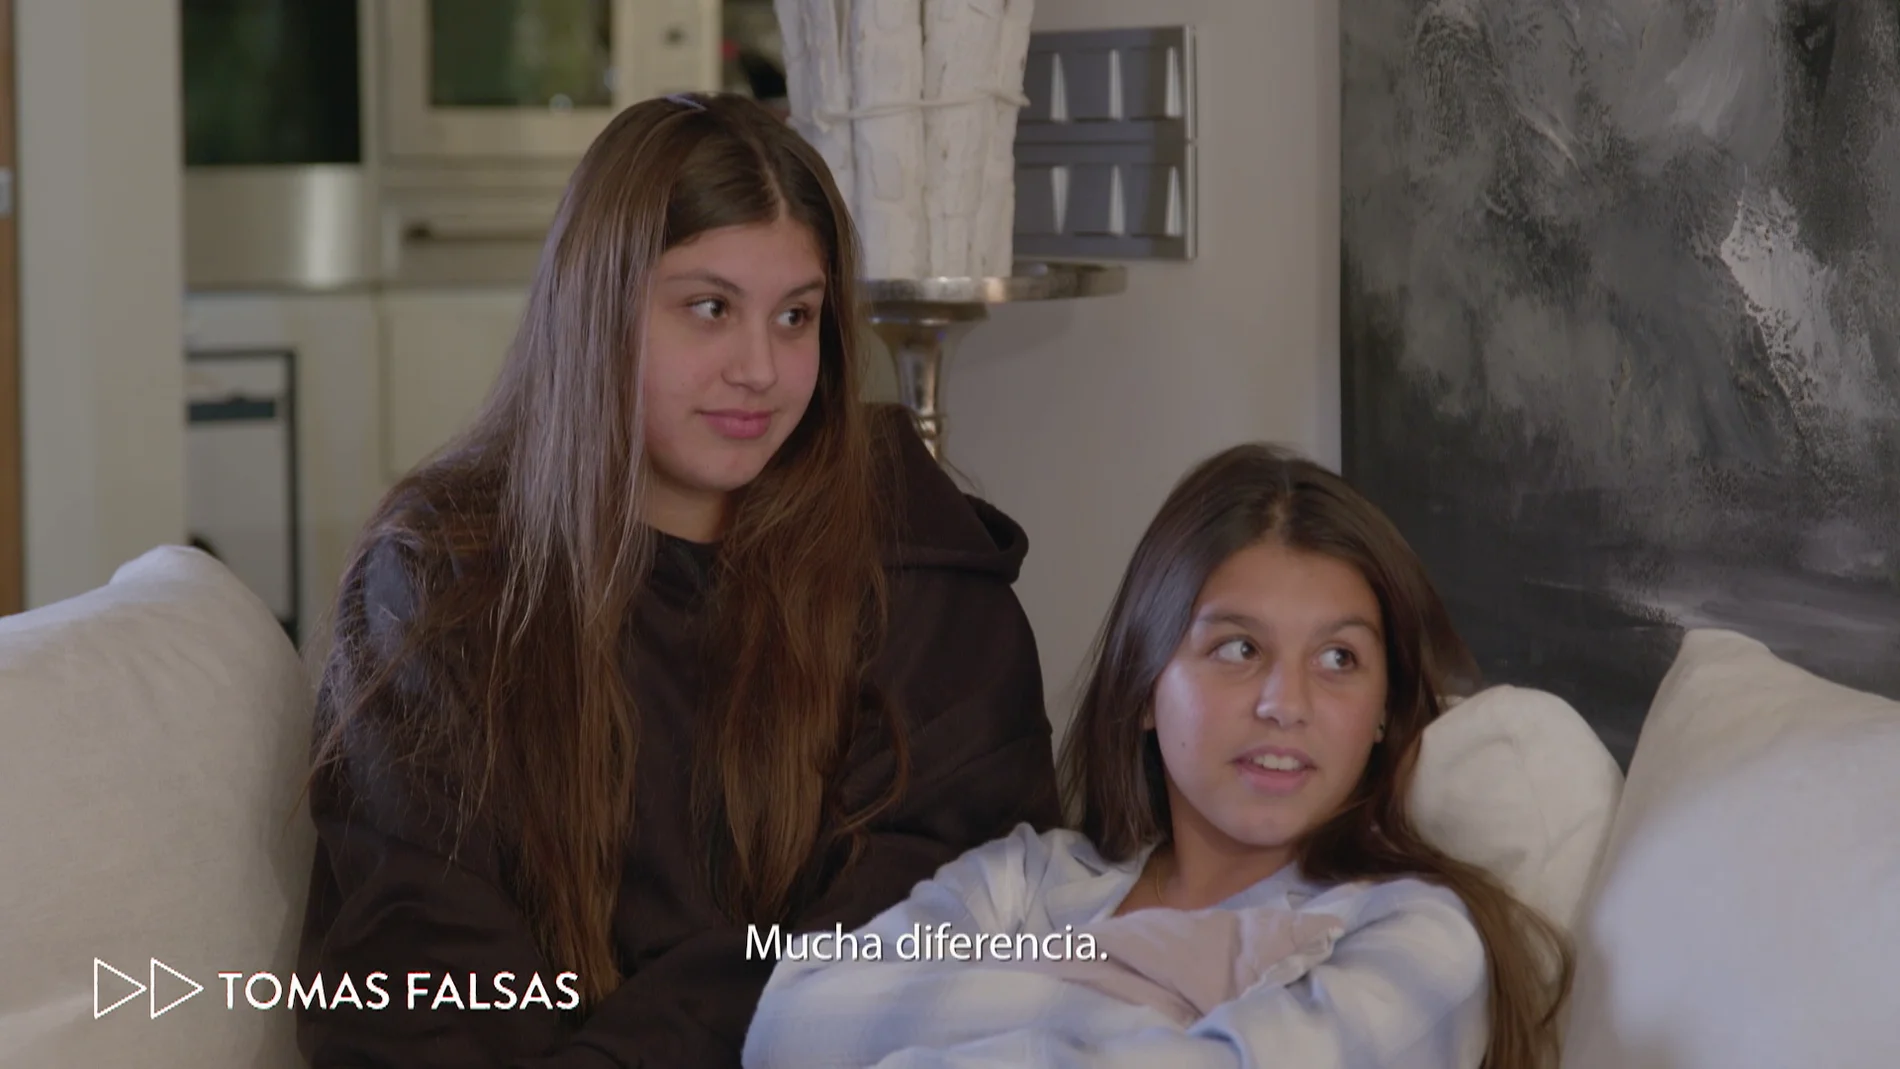 Las tomas falsas protagonizadas por Daniela y Salma